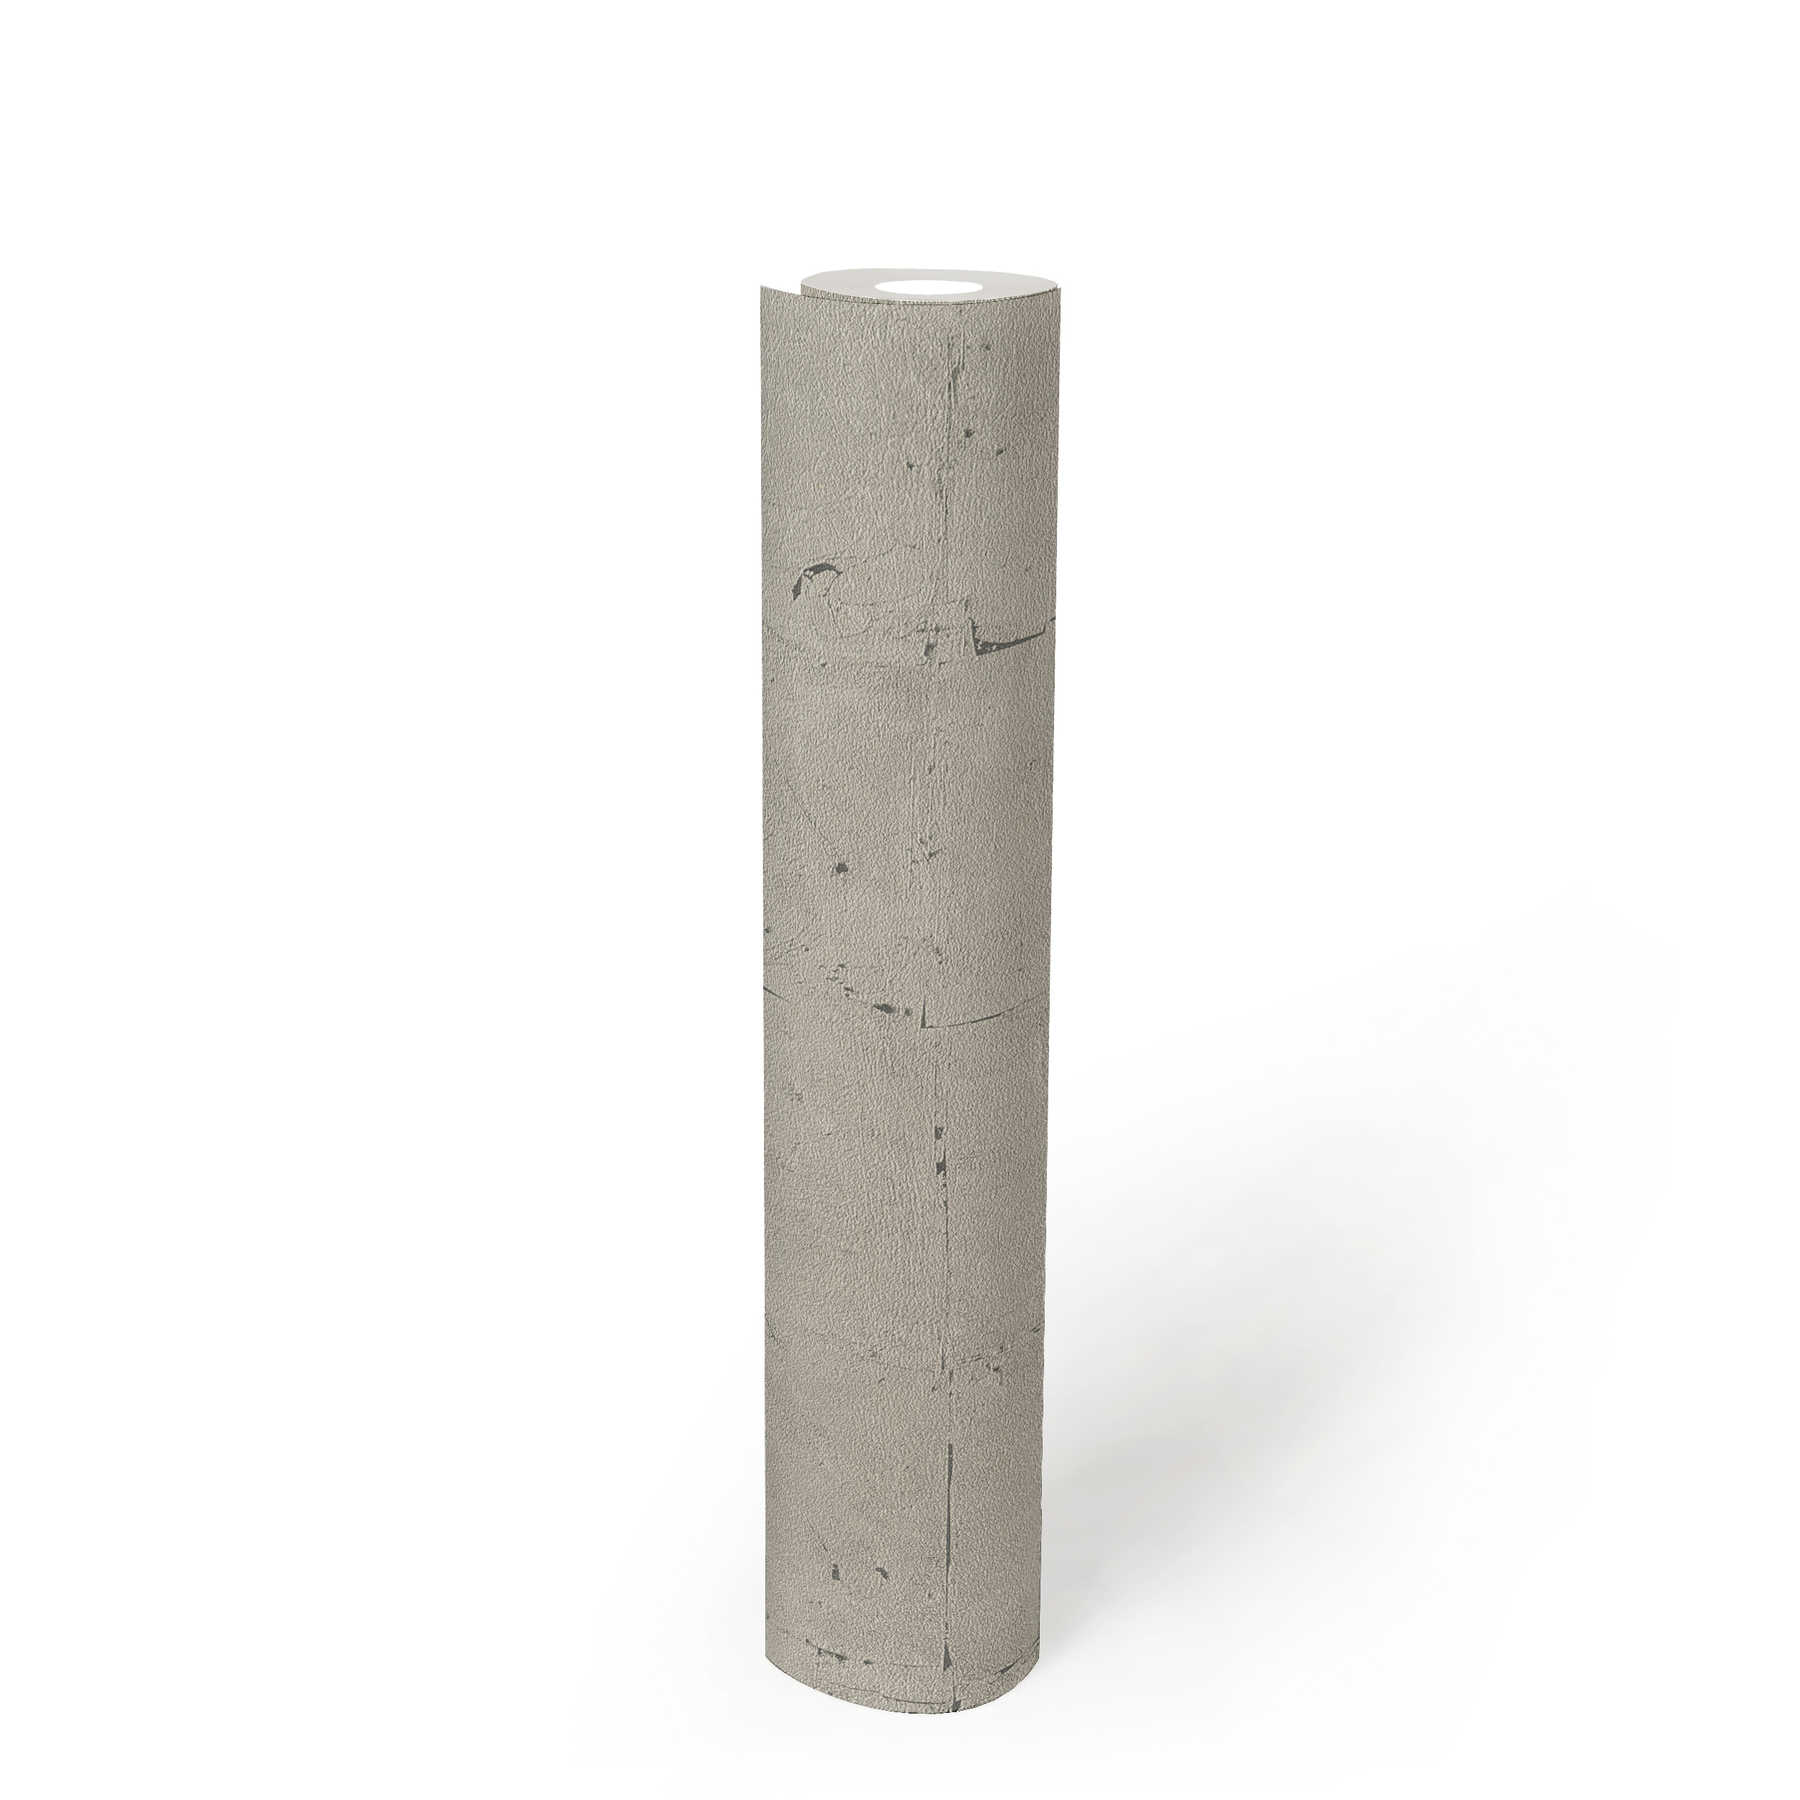             Steenachtig behang met structuurpatroon - grijs, beige
        